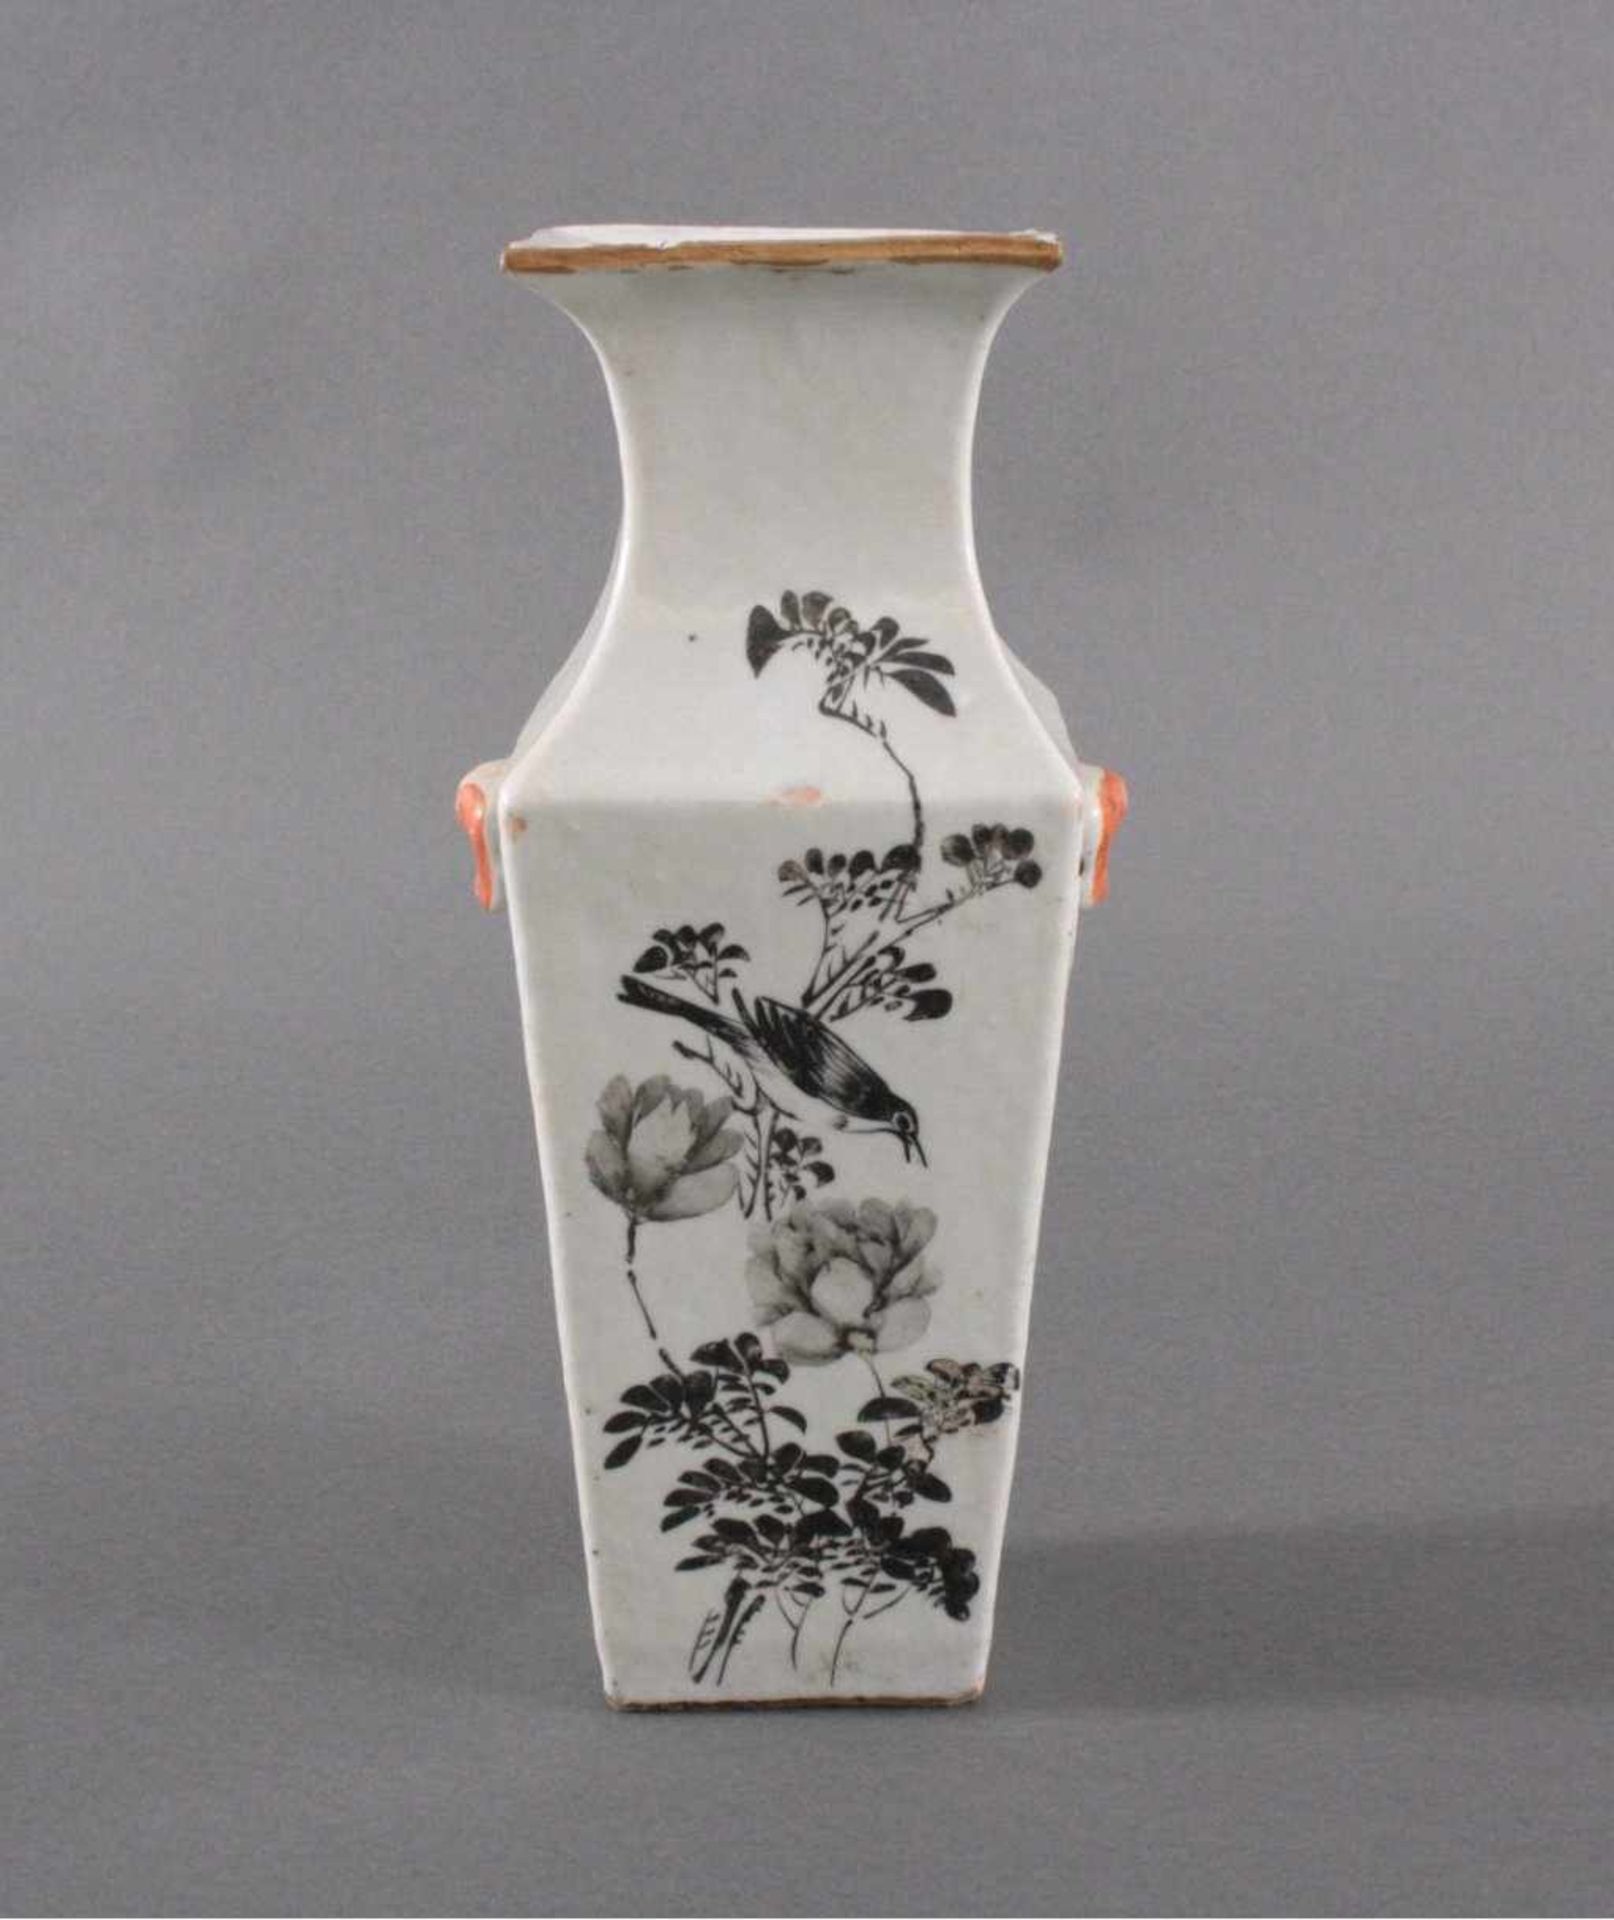 China-Vase um 1900Zylindrische Form, Porzellanvase mit weißer Glasur,gelb grundig mit umlaufender